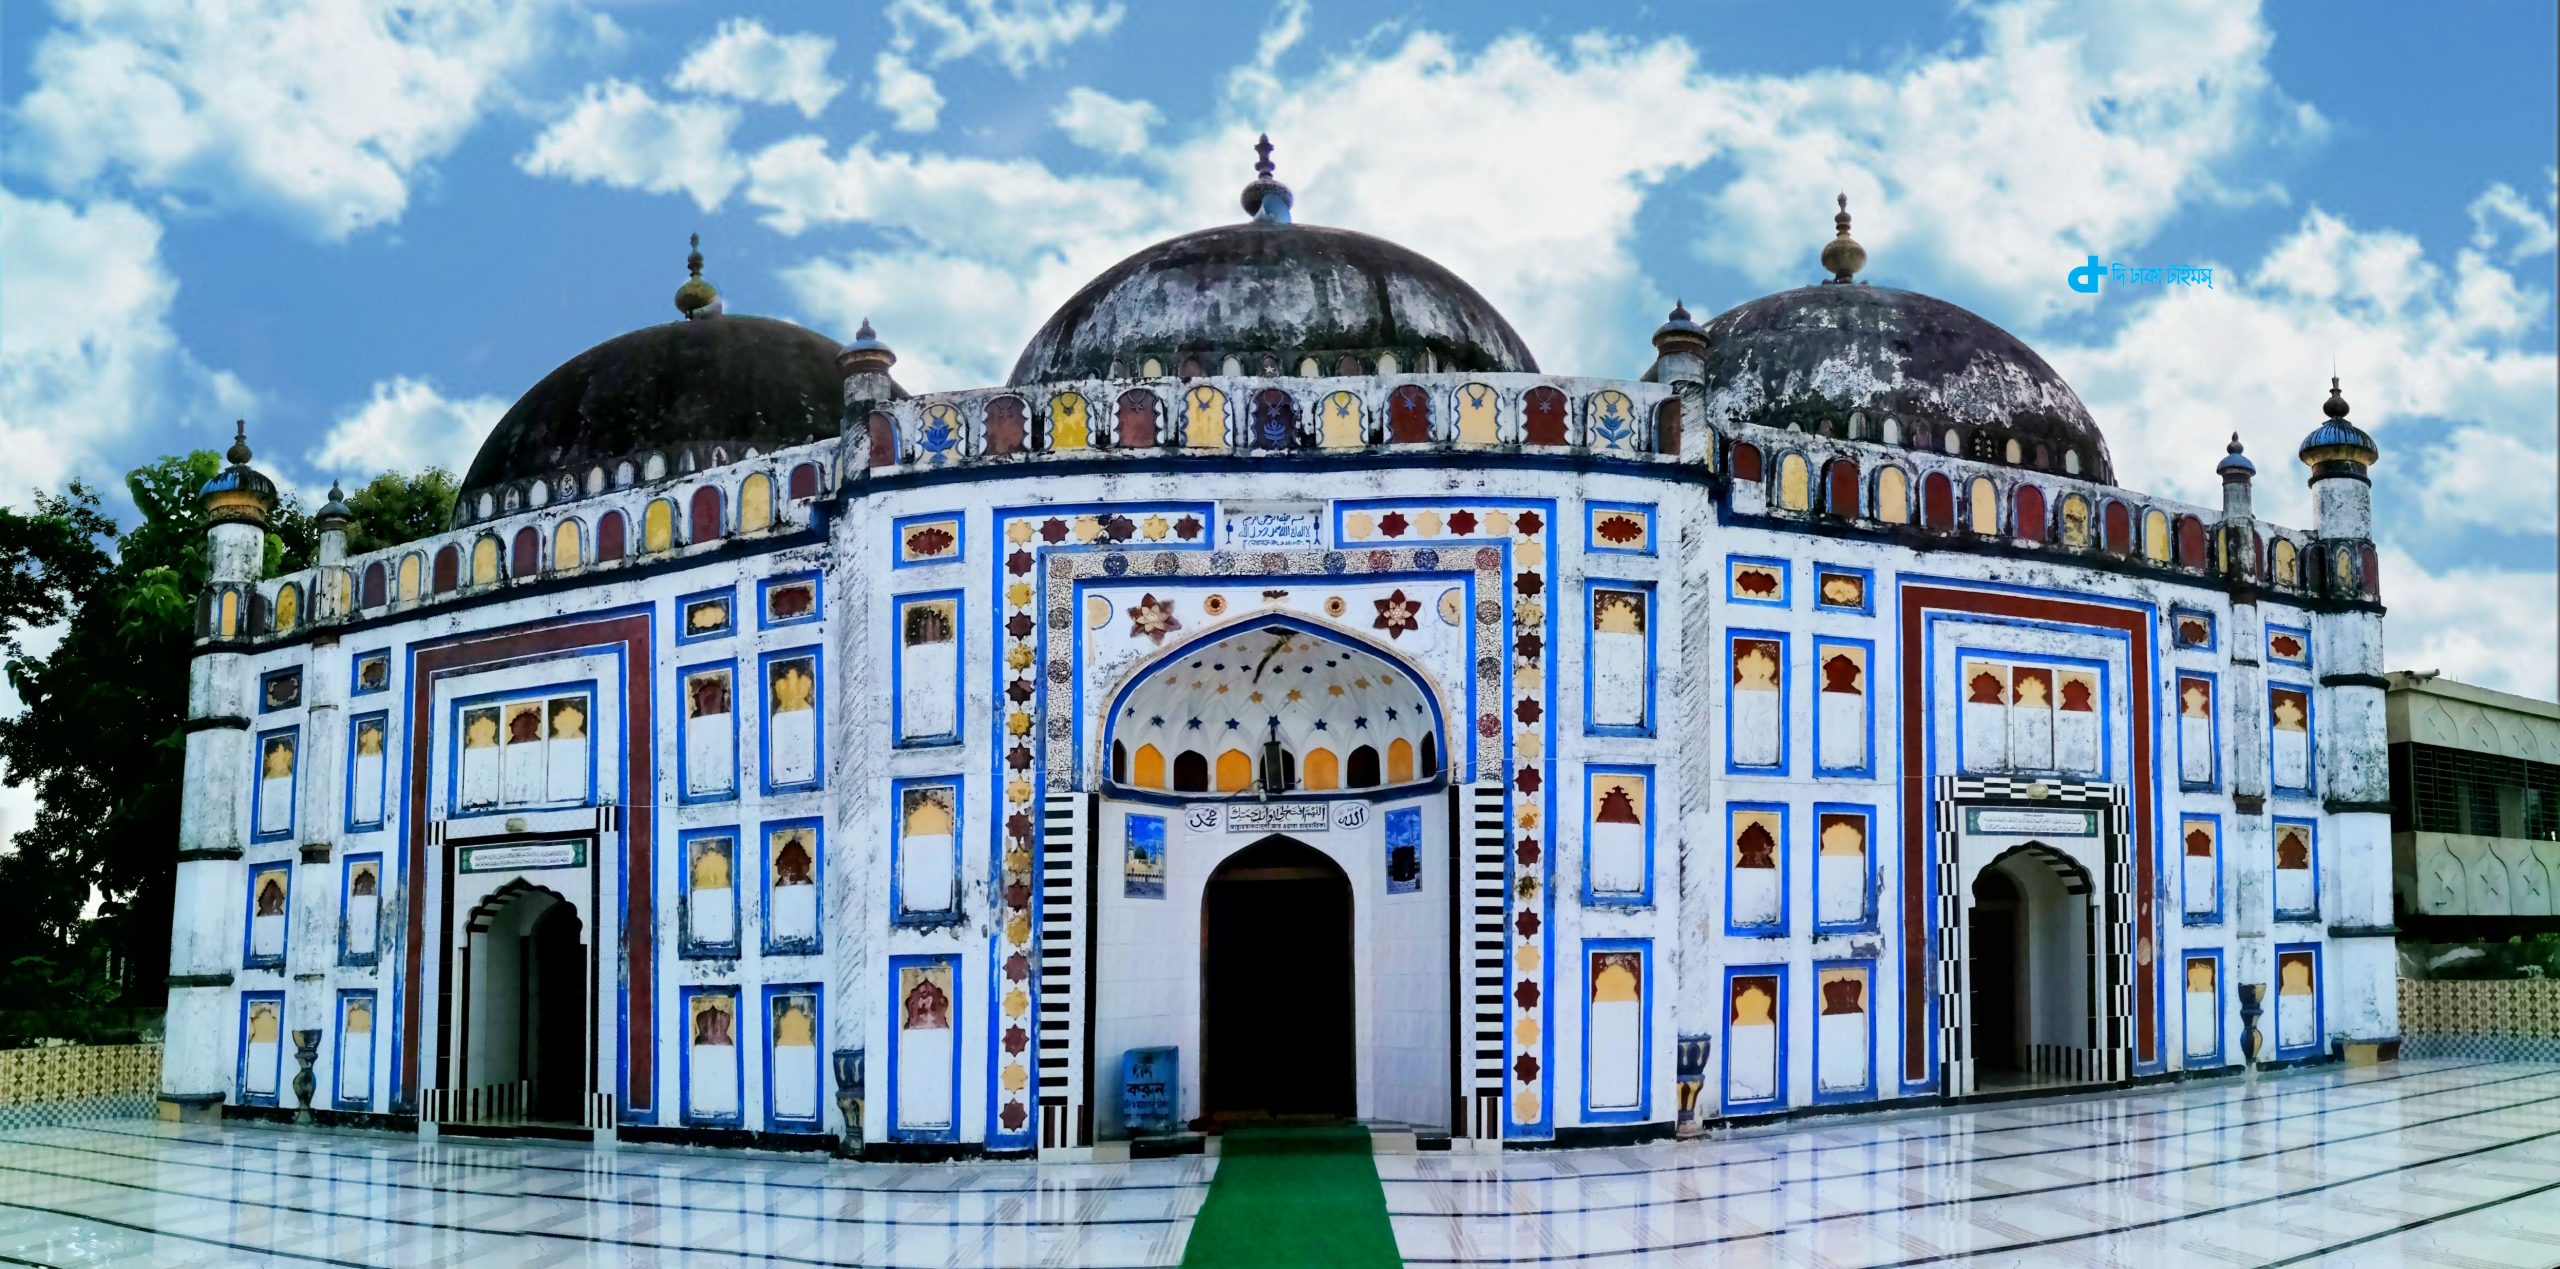 ব্রাহ্মণবাড়িয়ার ঐতিহাসিক আরিফিল মসজিদ 7